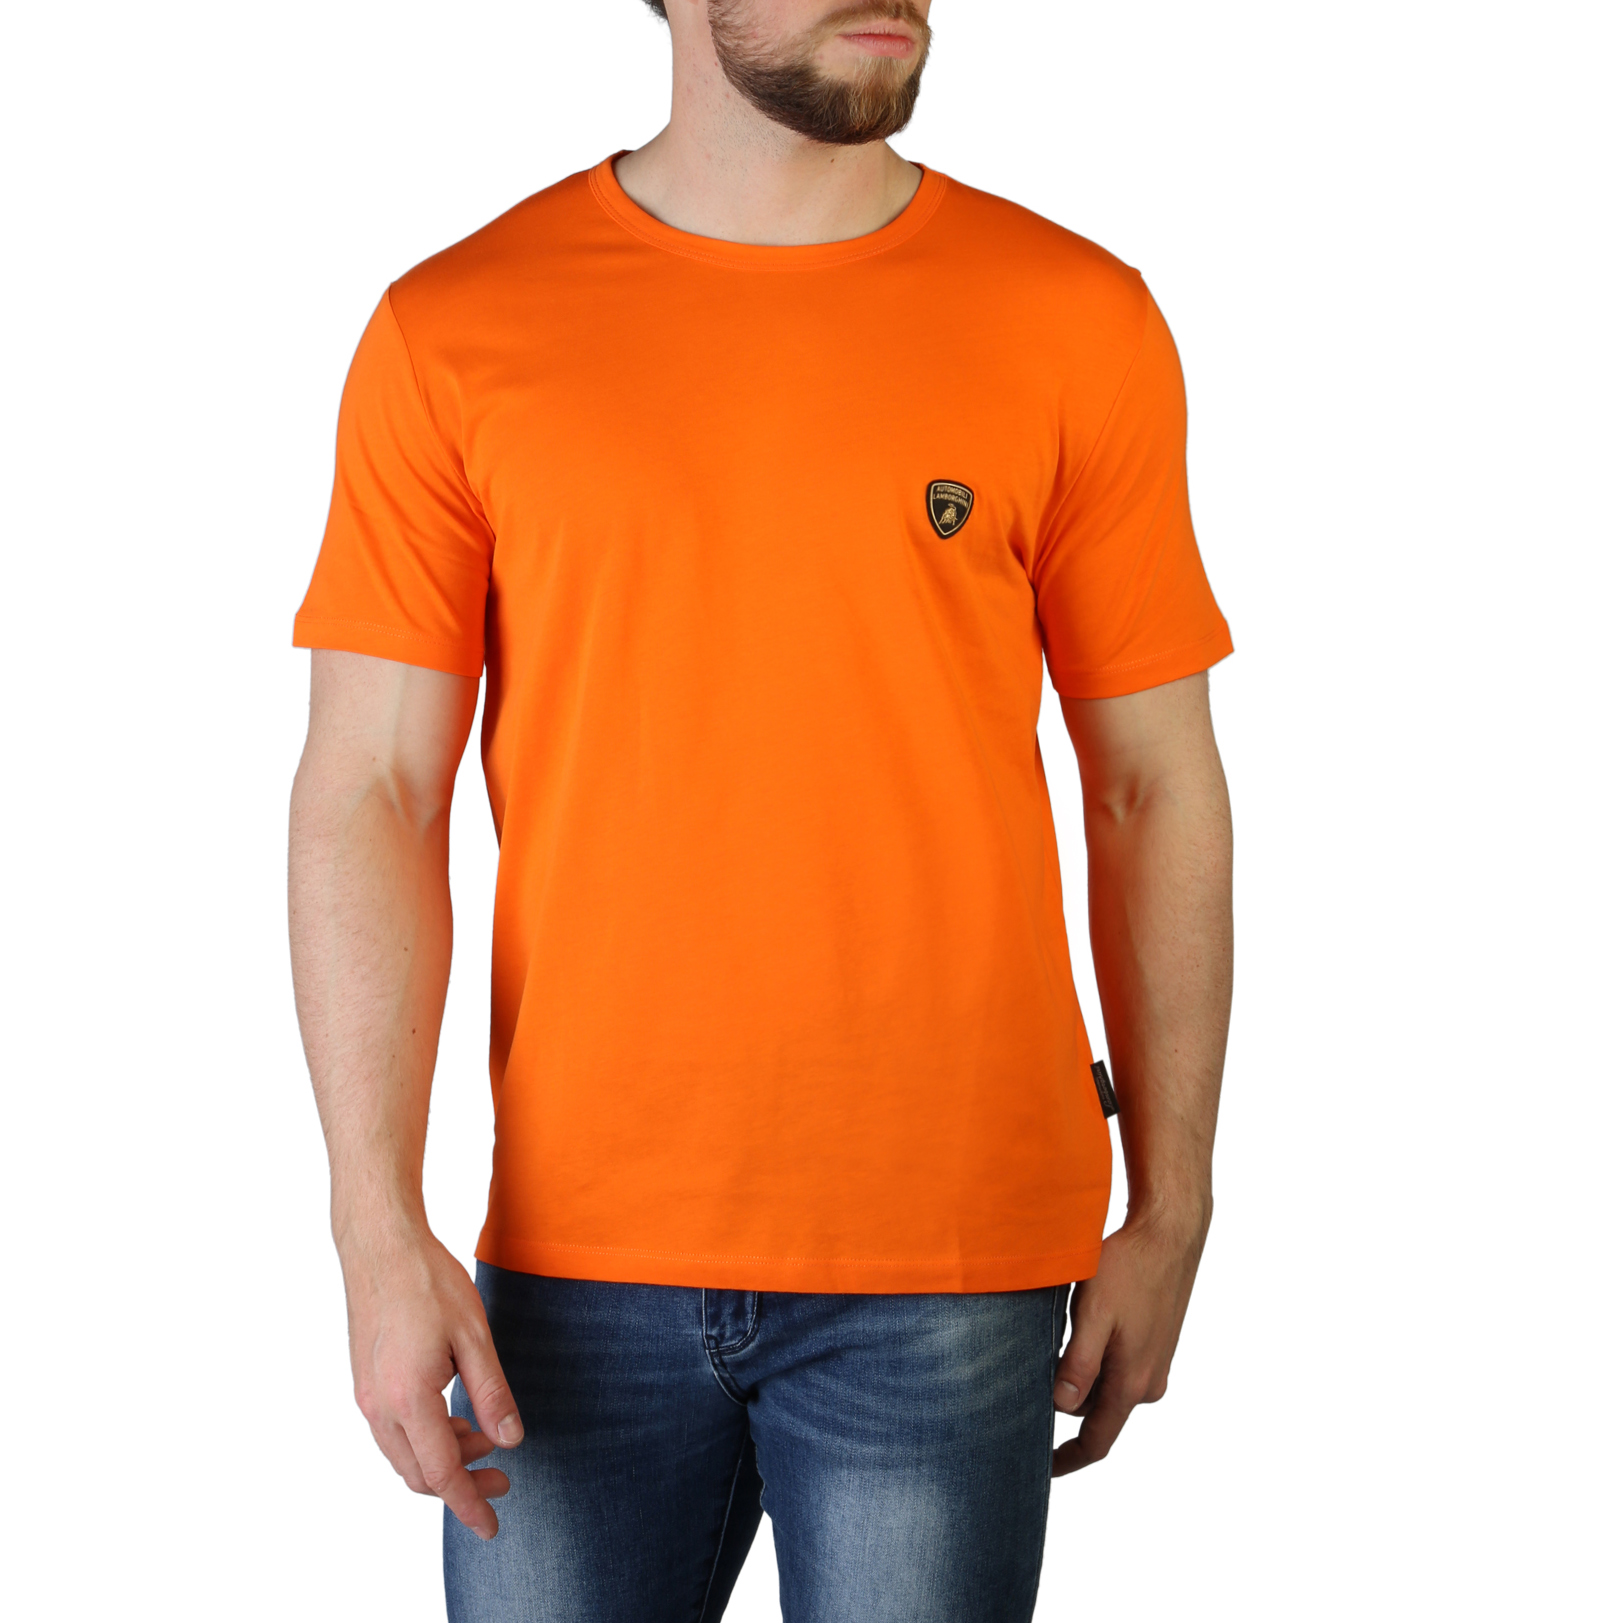 Lamborghini Orange T-shirts for Men - B3XVB7T1